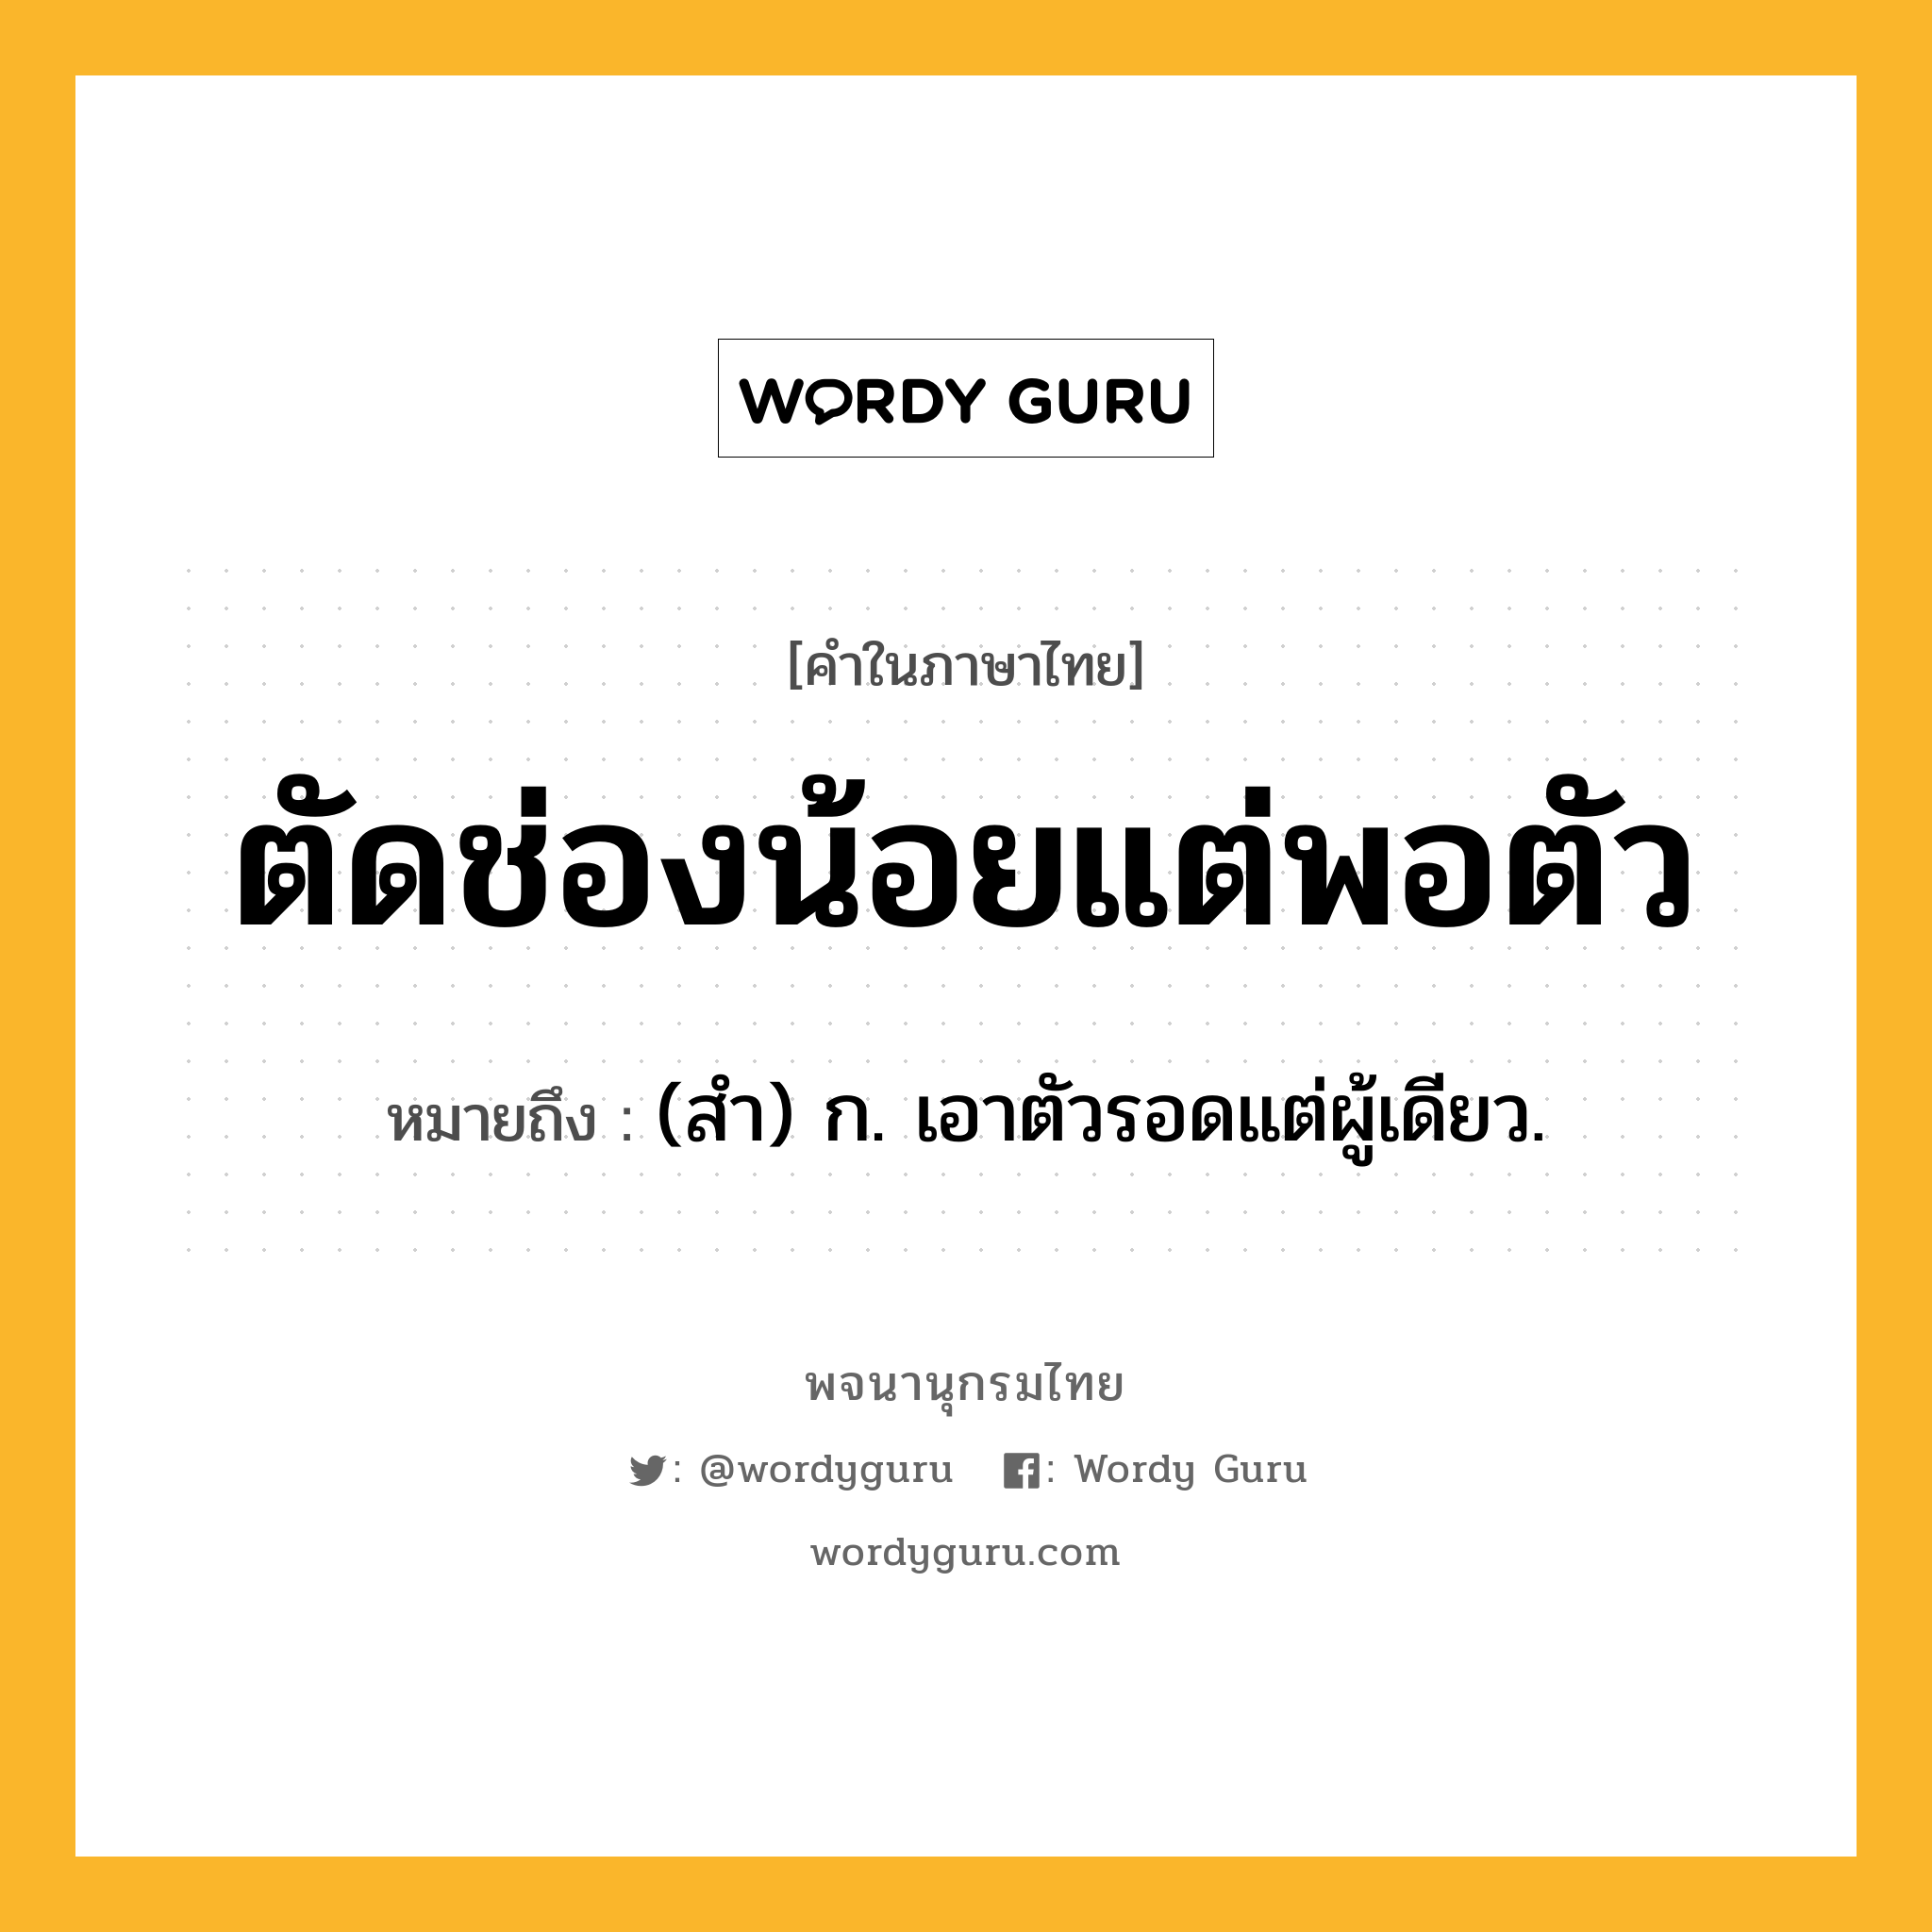 ตัดช่องน้อยแต่พอตัว หมายถึงอะไร?, คำในภาษาไทย ตัดช่องน้อยแต่พอตัว หมายถึง (สํา) ก. เอาตัวรอดแต่ผู้เดียว.